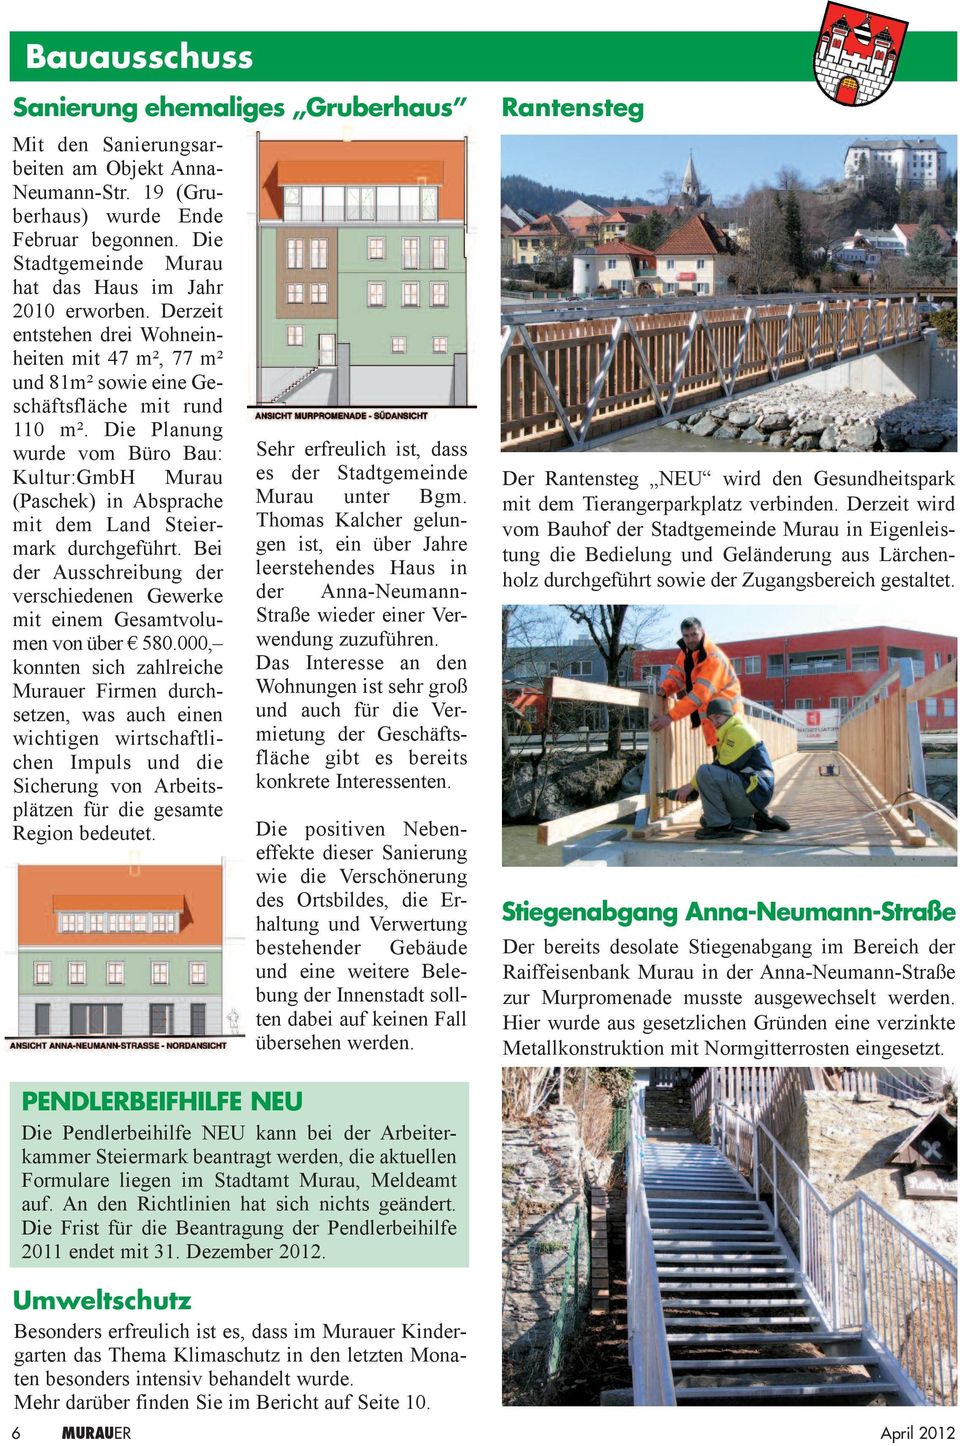 Die Planung wurde vom Büro Bau: Kultur:GmbH Murau (Paschek) in Absprache mit dem Land Steiermark durchgeführt. Bei der Ausschreibung der verschiedenen Gewerke mit einem Gesamtvolumen von über 580.